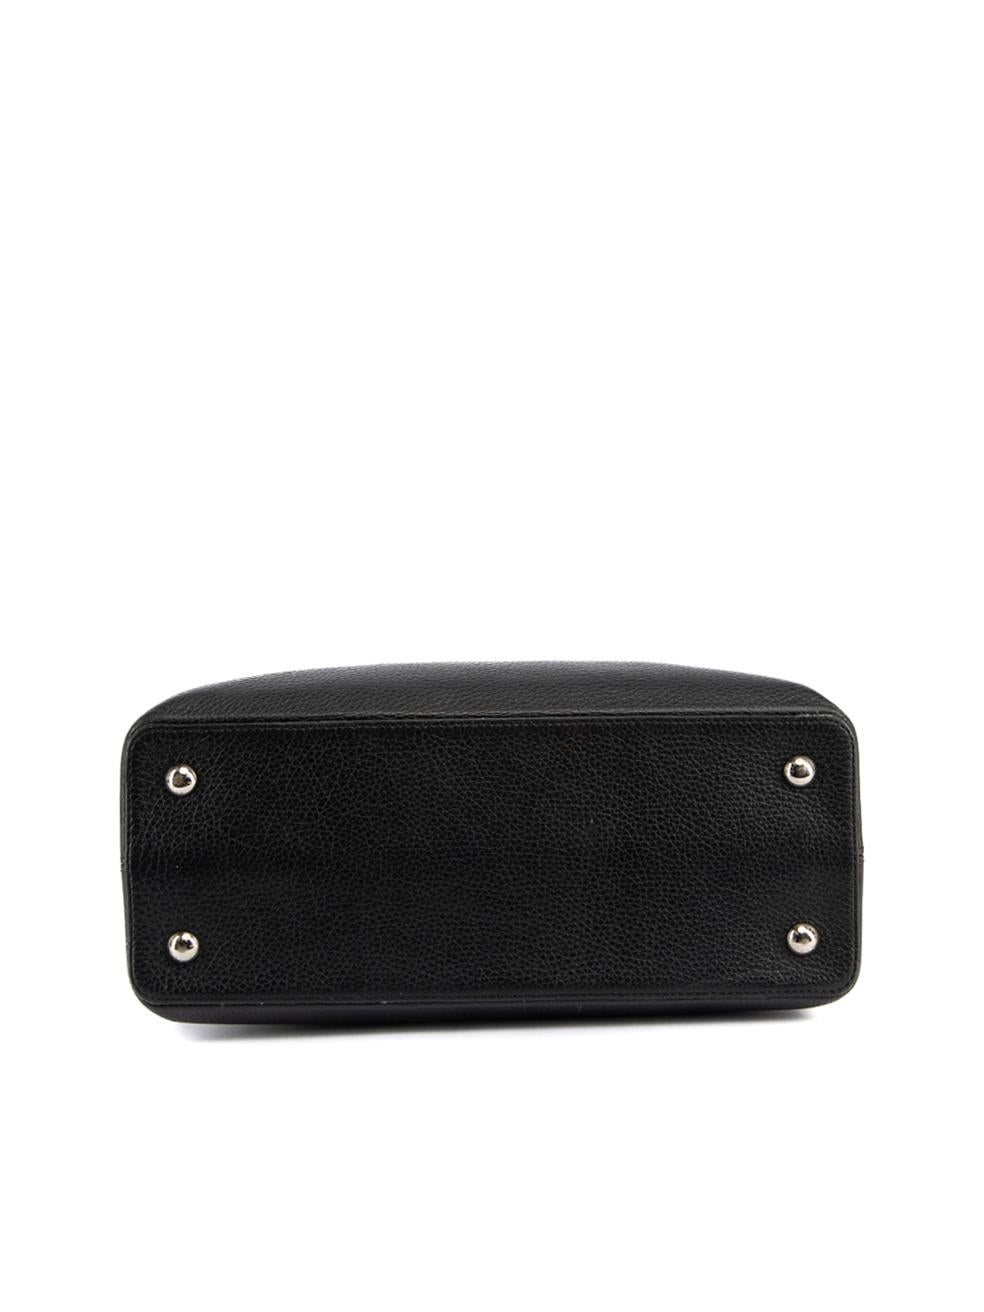 Pre-Loved Louis Vuitton Women's Black 2014 Python Handle Capucines MM Bag 1